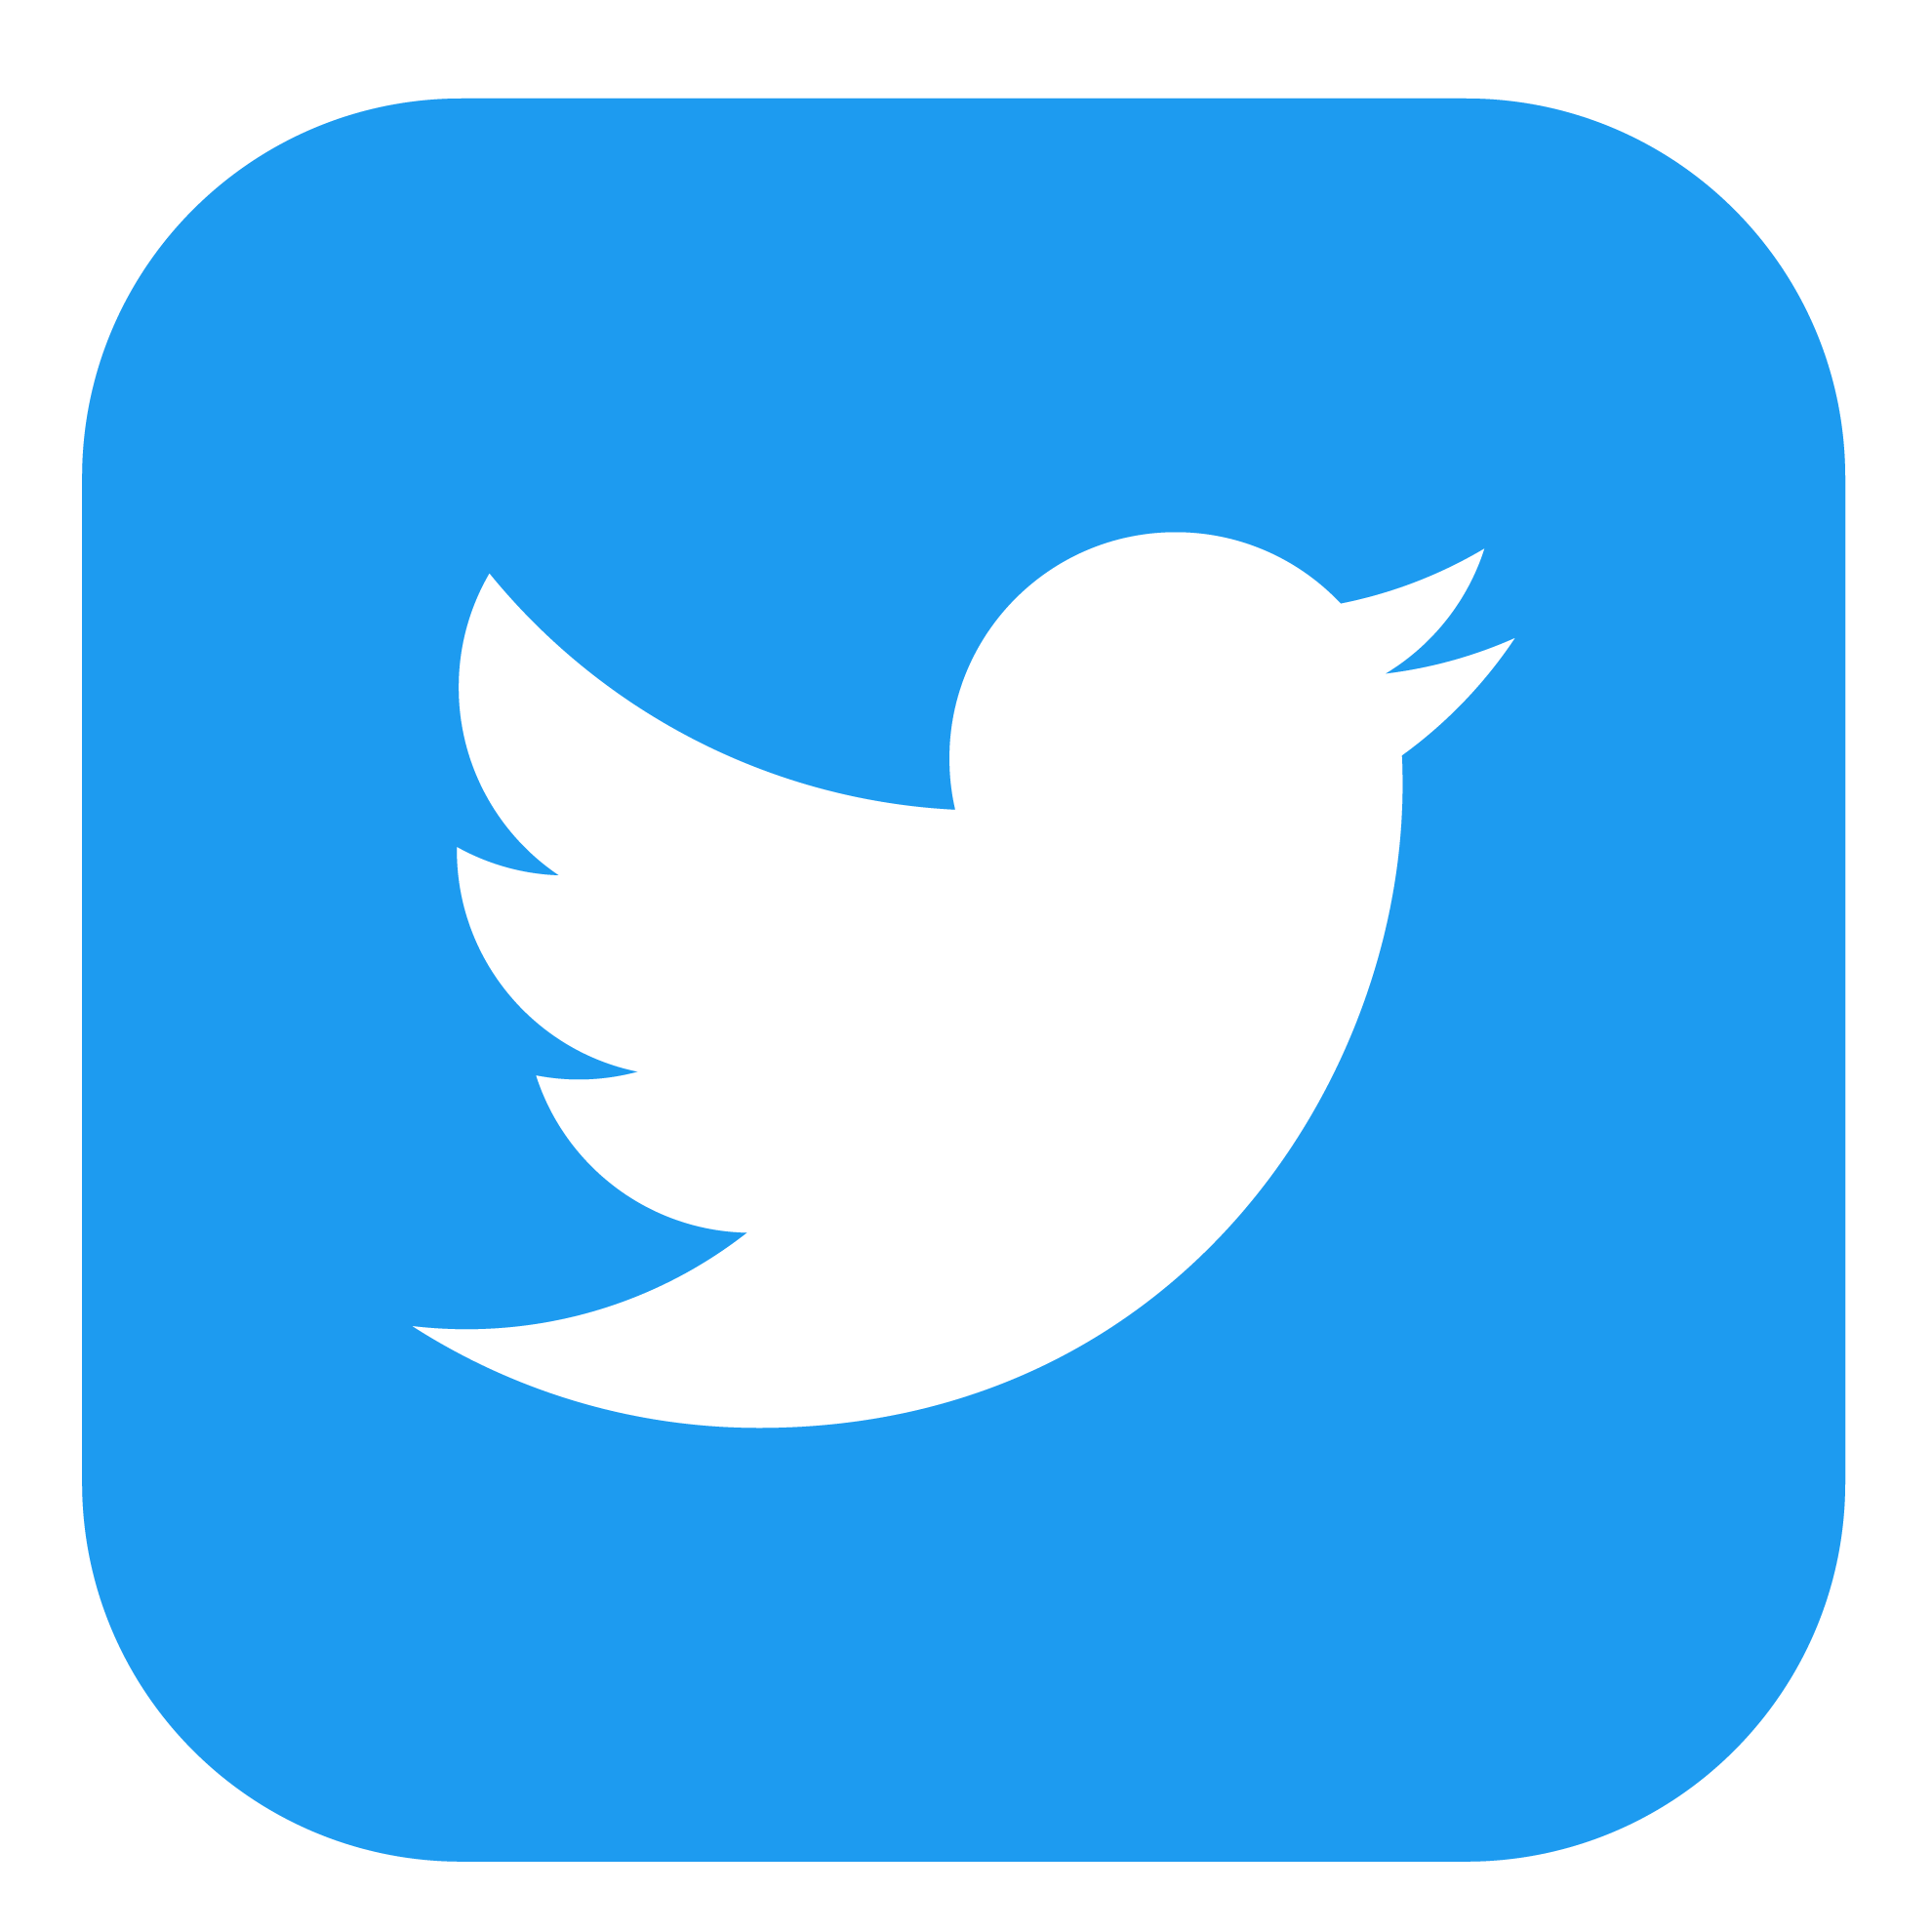 Logotipo Twitter con tu recarga telefónica Movistar prepago ilimitado